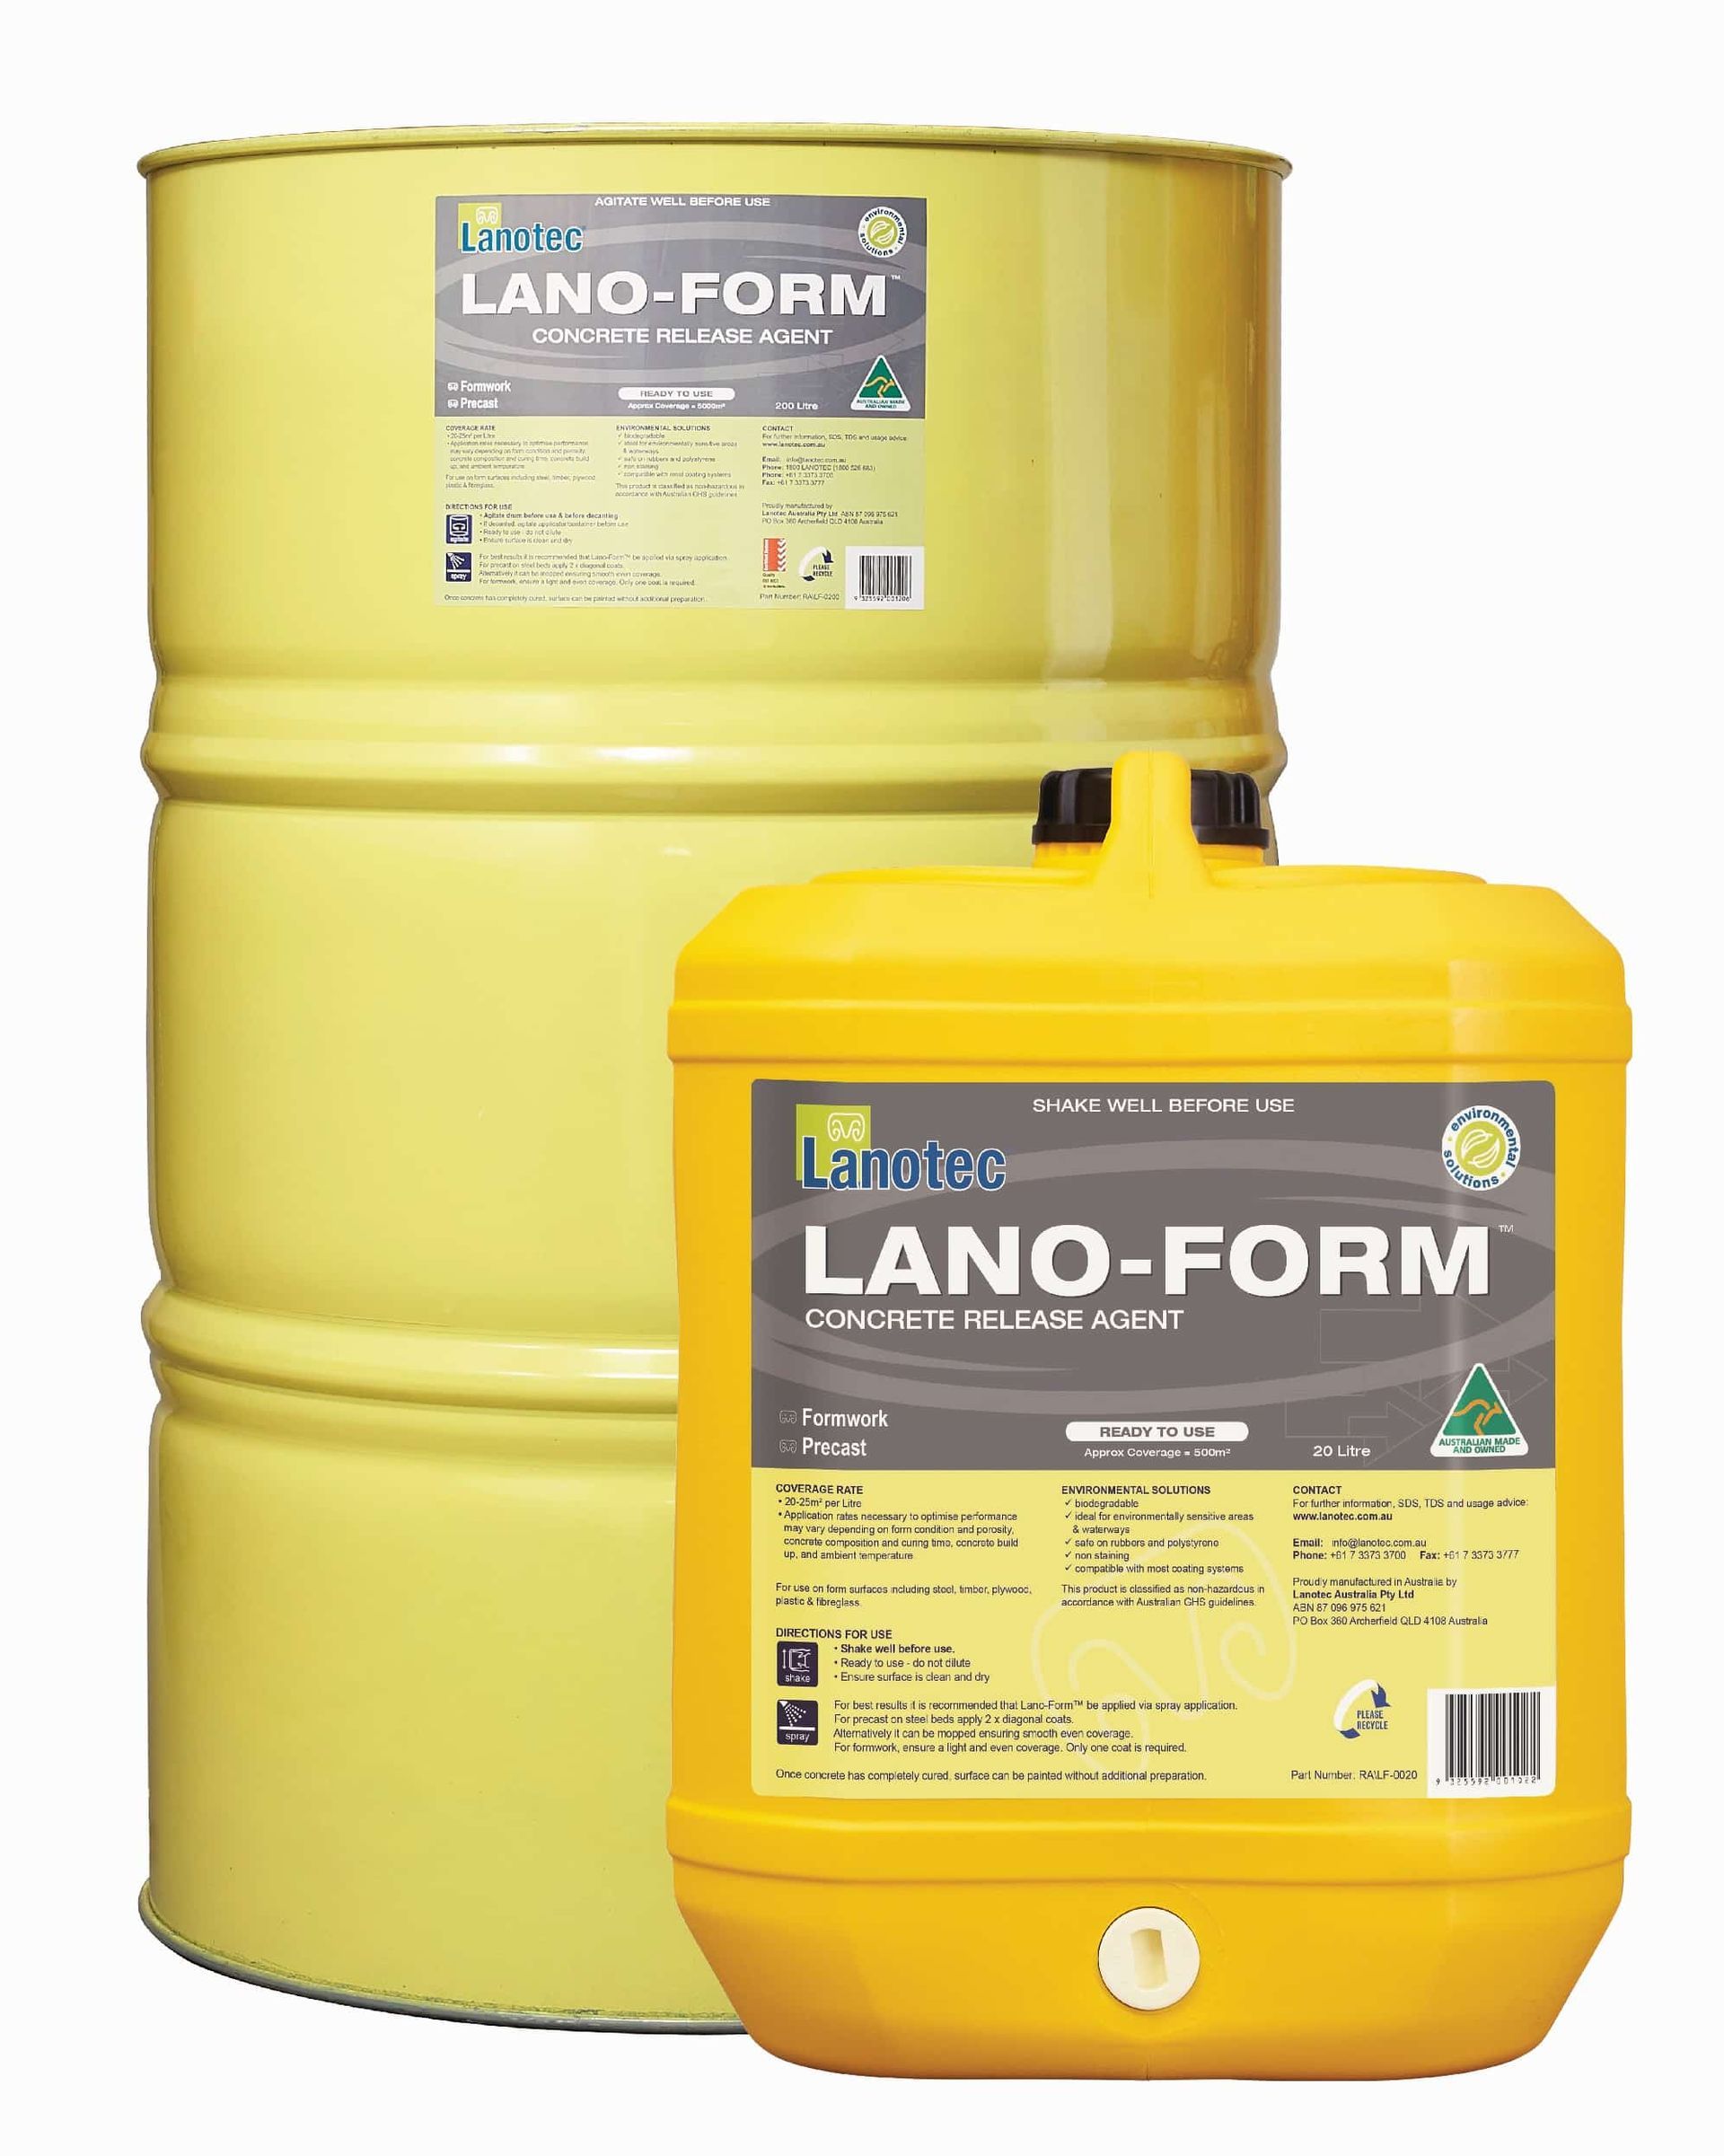 Lantotec Lano-Form concrete release agent